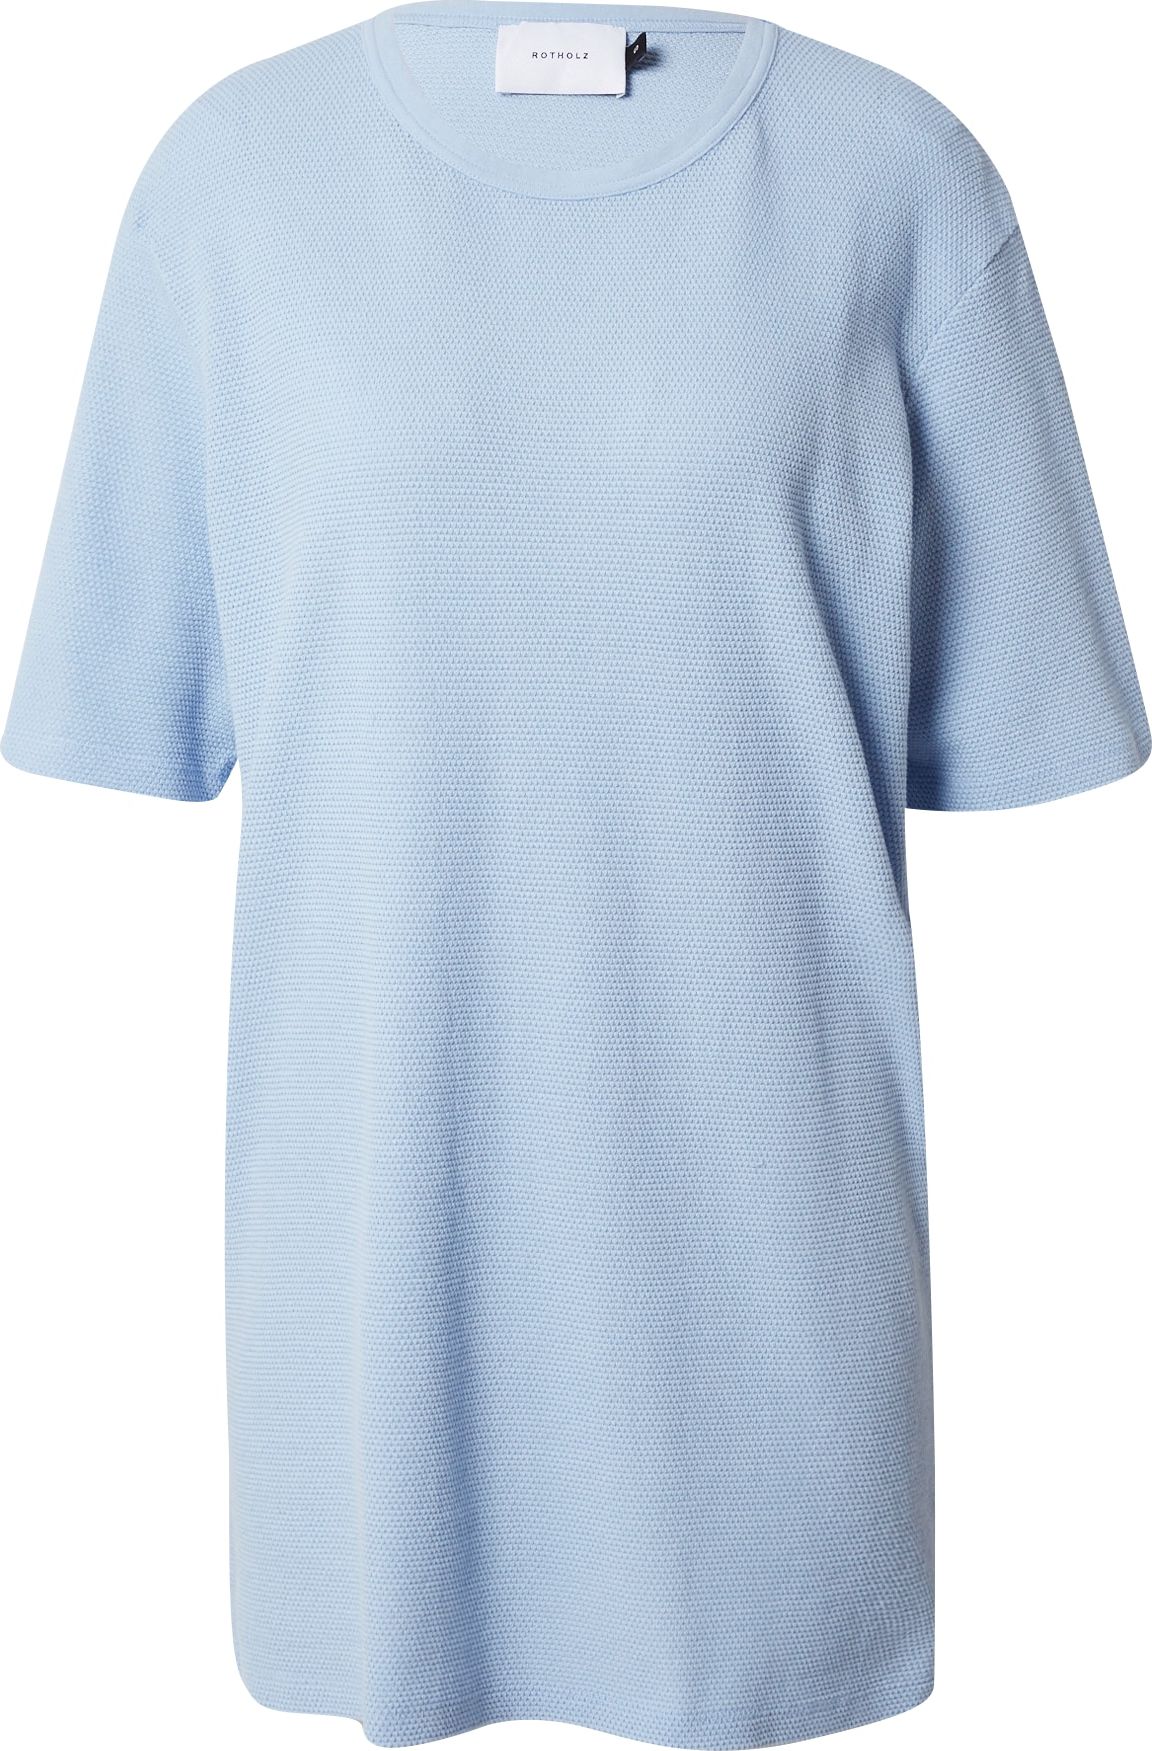 Rotholz Oversized tričko nebeská modř